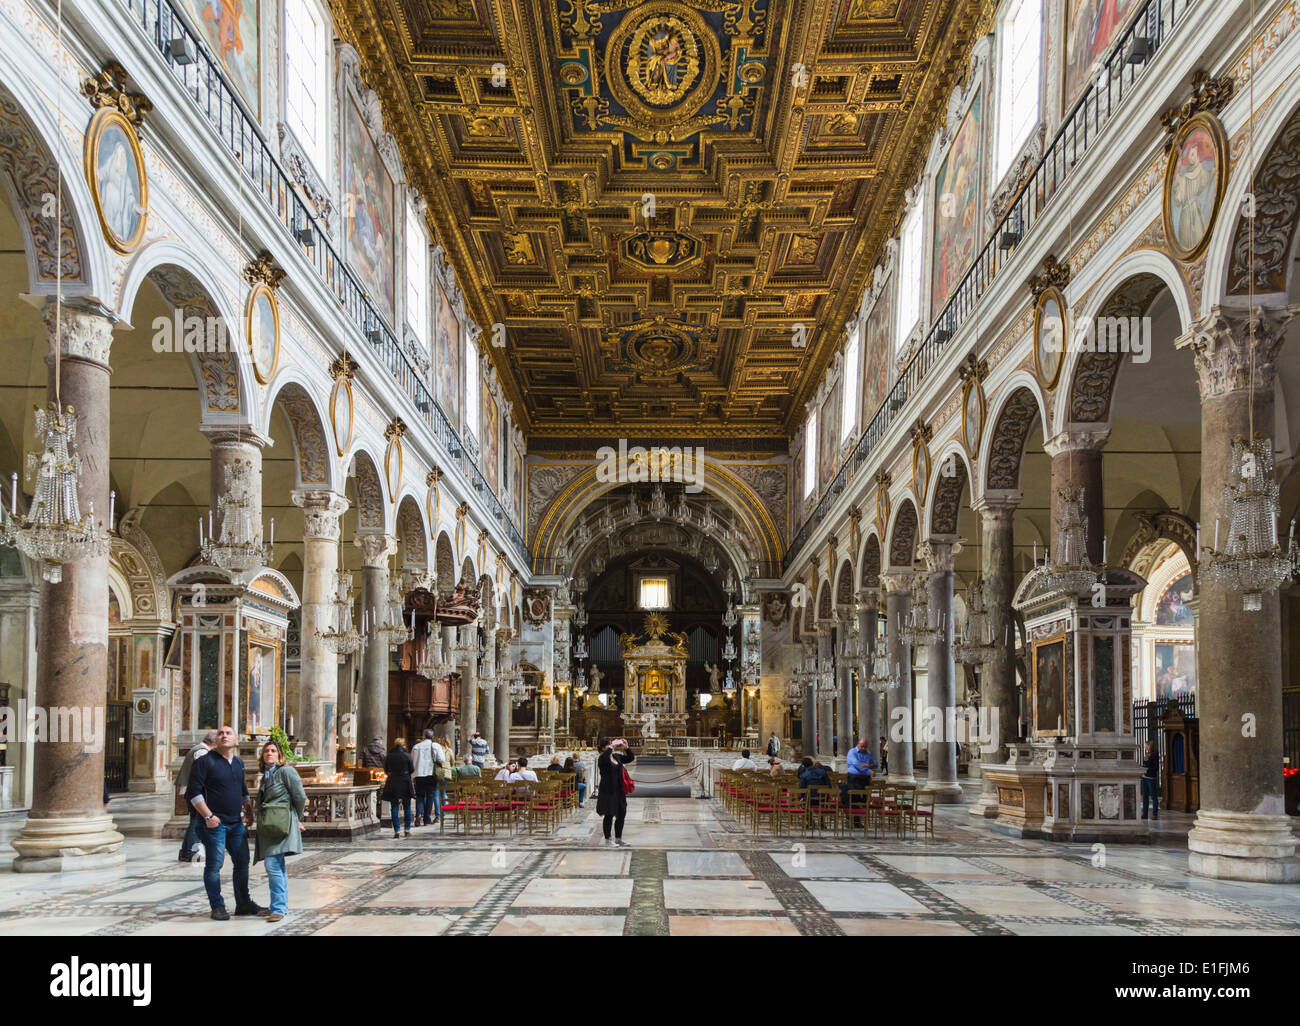 Rome, Italy. Interior of the church of Santa Maria in Arocoeli. Stock Photo